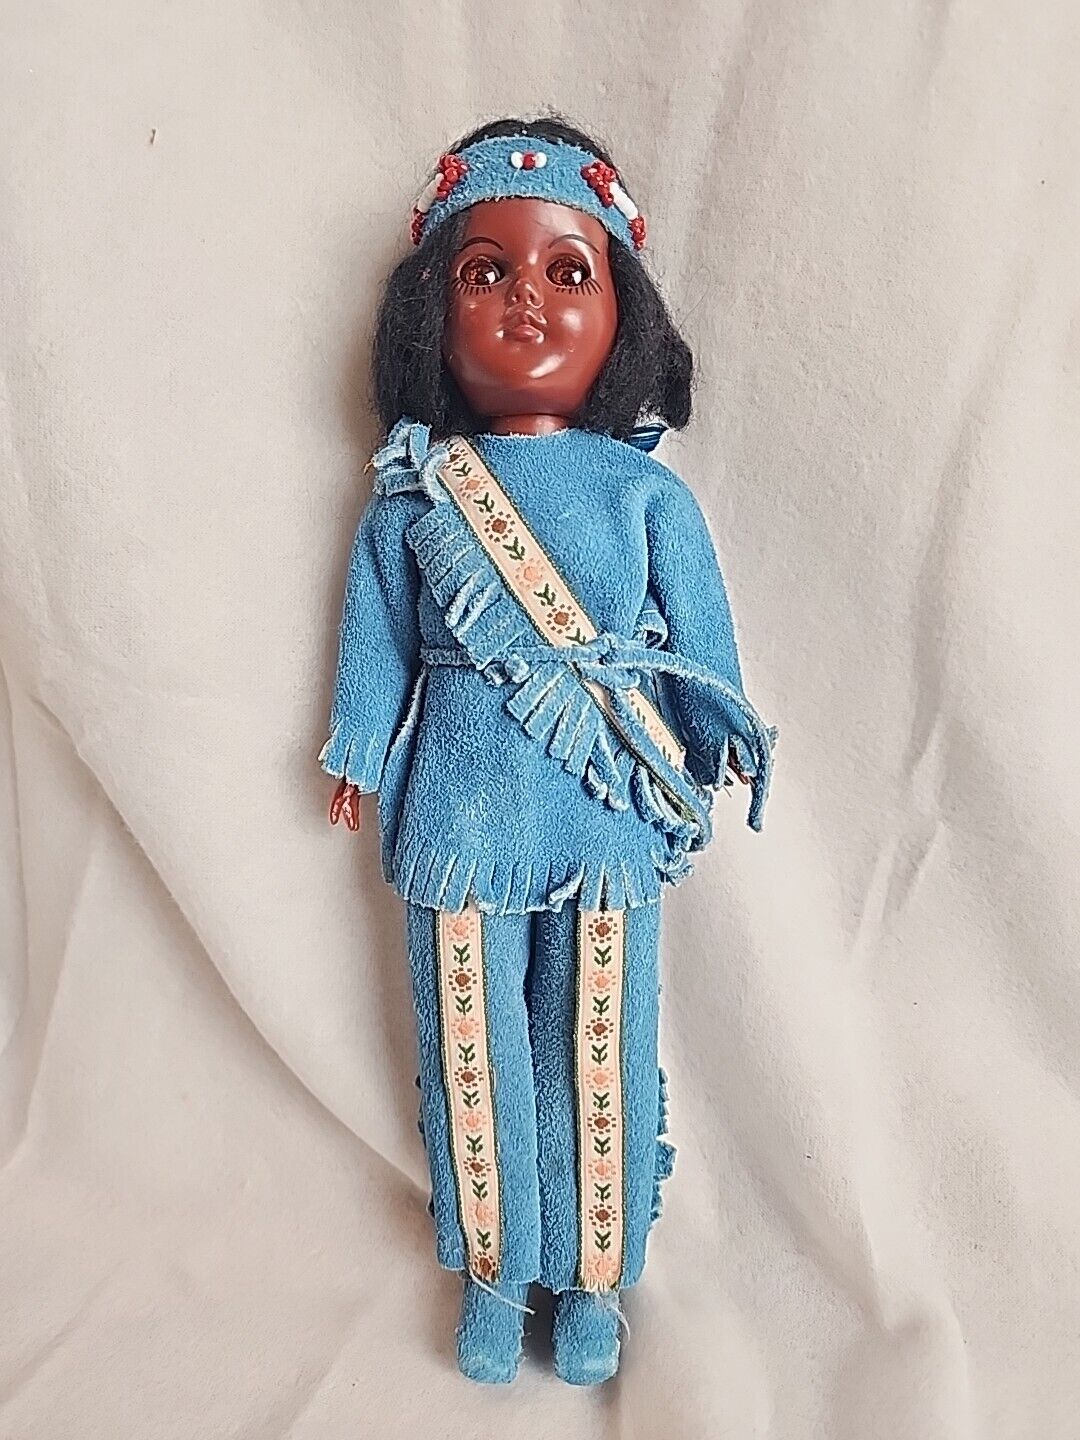 Native American Indian Doll W Arrow VTG Suede & Beads Sleepy Eyes Priority